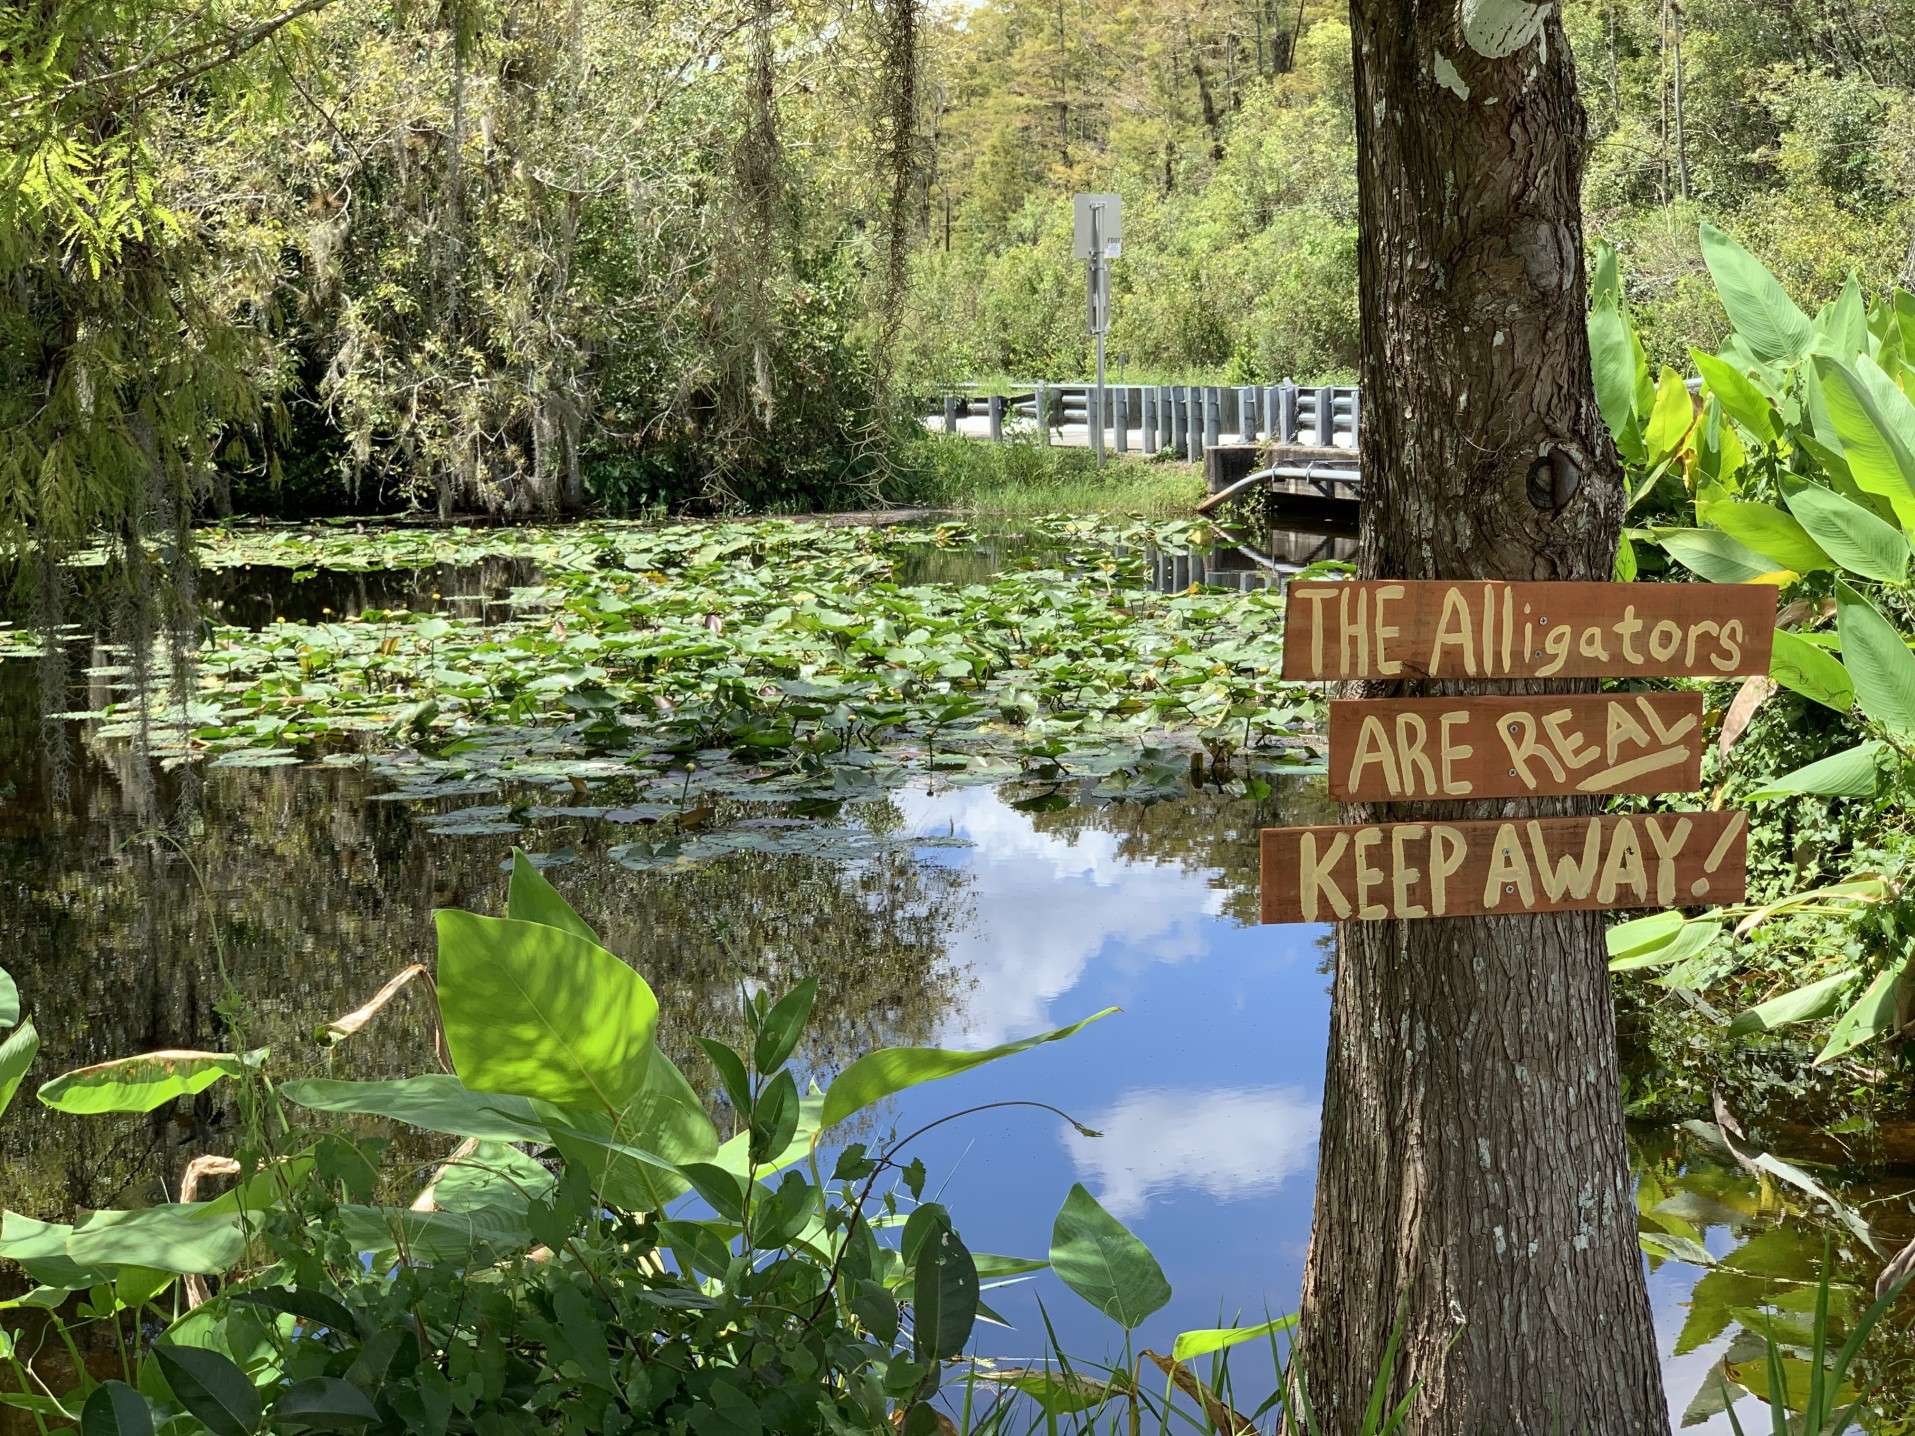 Alligator warning sign in Everglades National Park